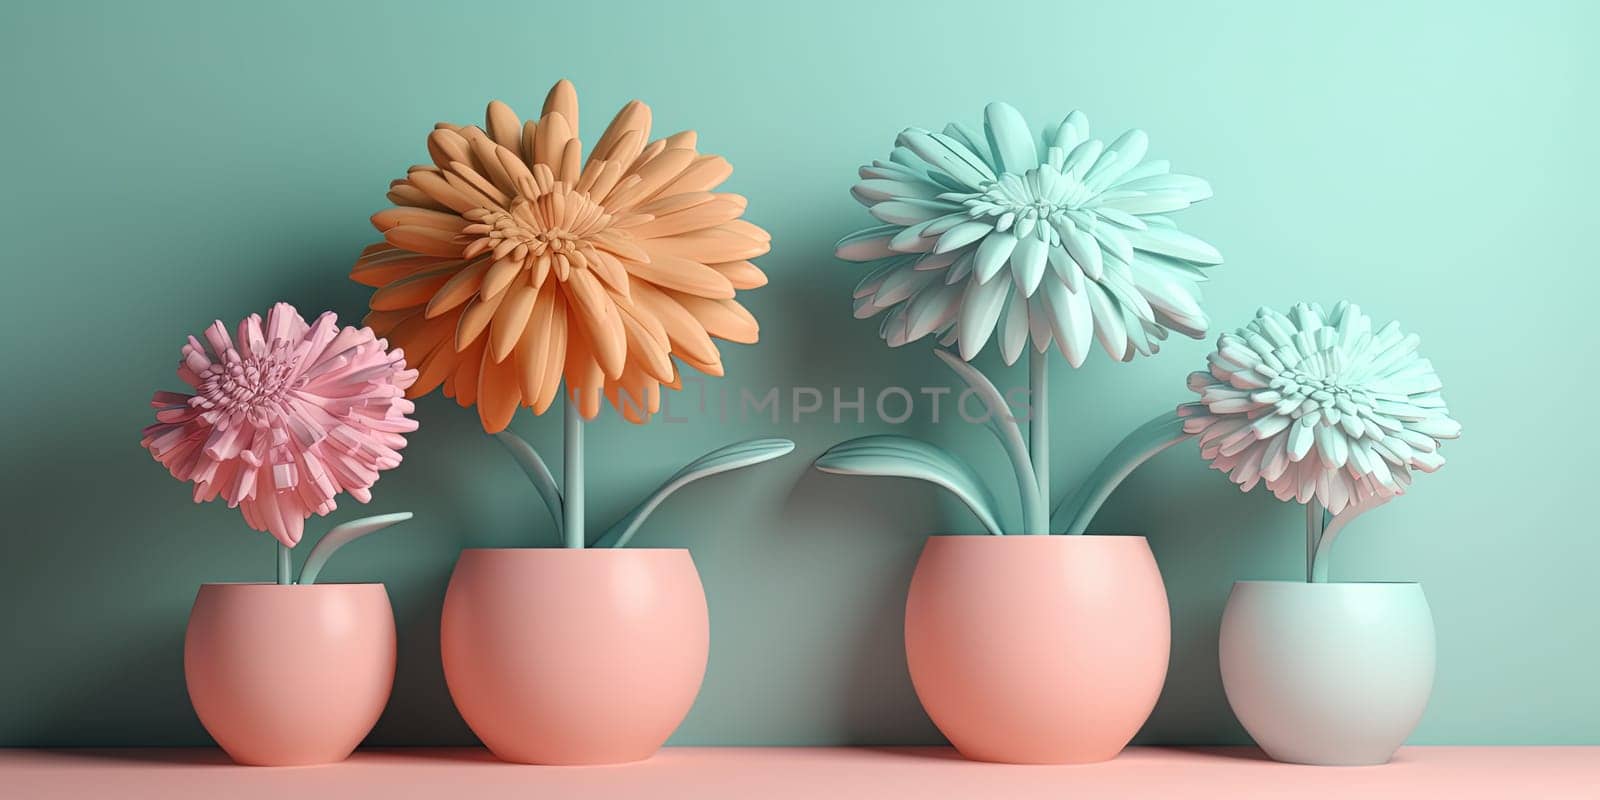 Pastel Colors Brighten Flowers in pots by GekaSkr